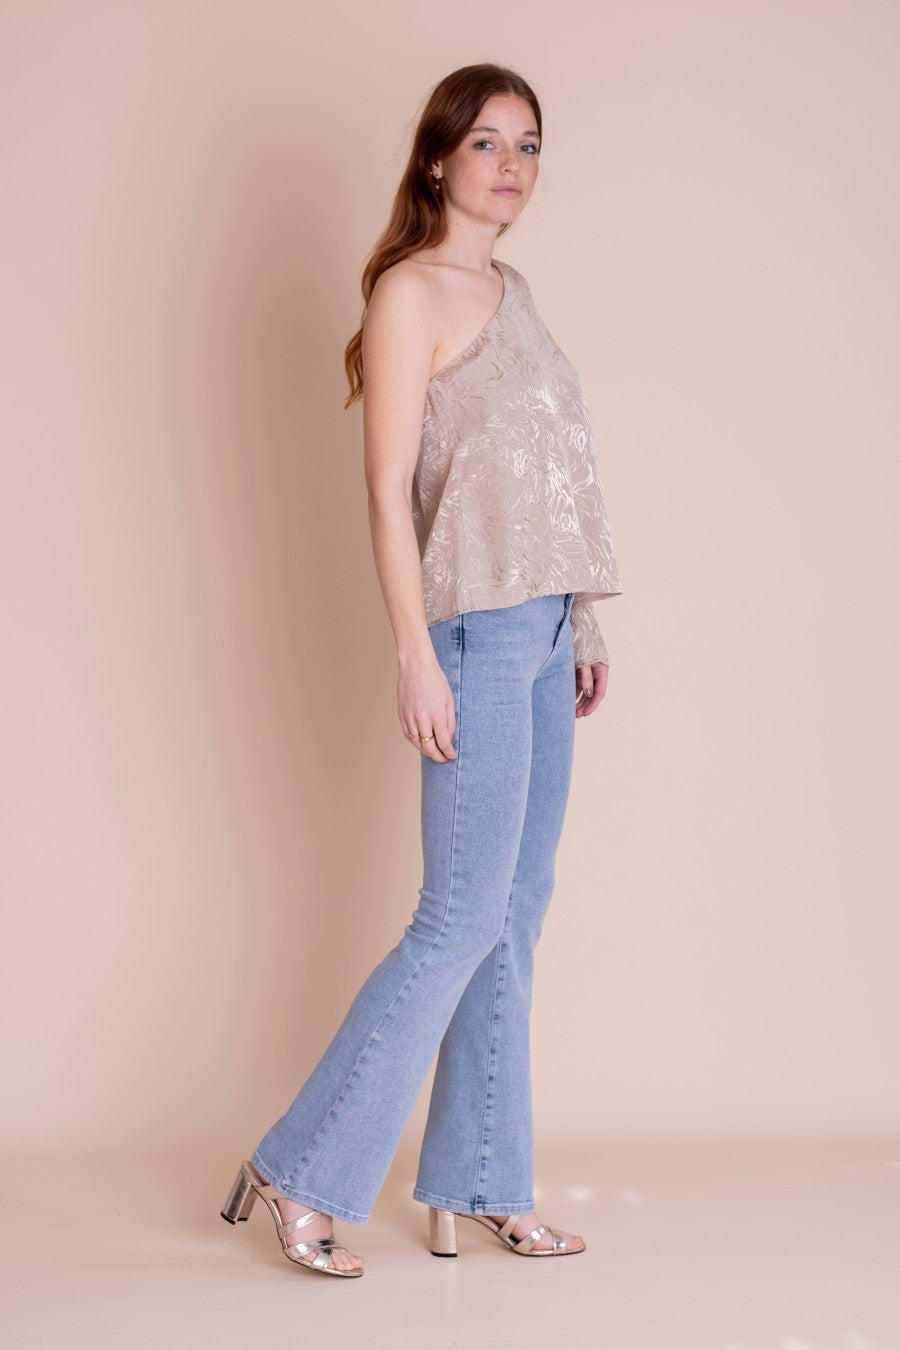 Lichtblauwe flared jeans van het merk Homage. De 'Jane - Flared Jeans' is gemaakt van een comfortabele stretchstof die zijn vorm de hele dag behoudt. De flared jeans heeft een hoge taille, met een strakke pasvorm bij de heupen en loopt vanaf de knie uit in een flare. Shop de nieuwe collectie dames jeans Homage online.